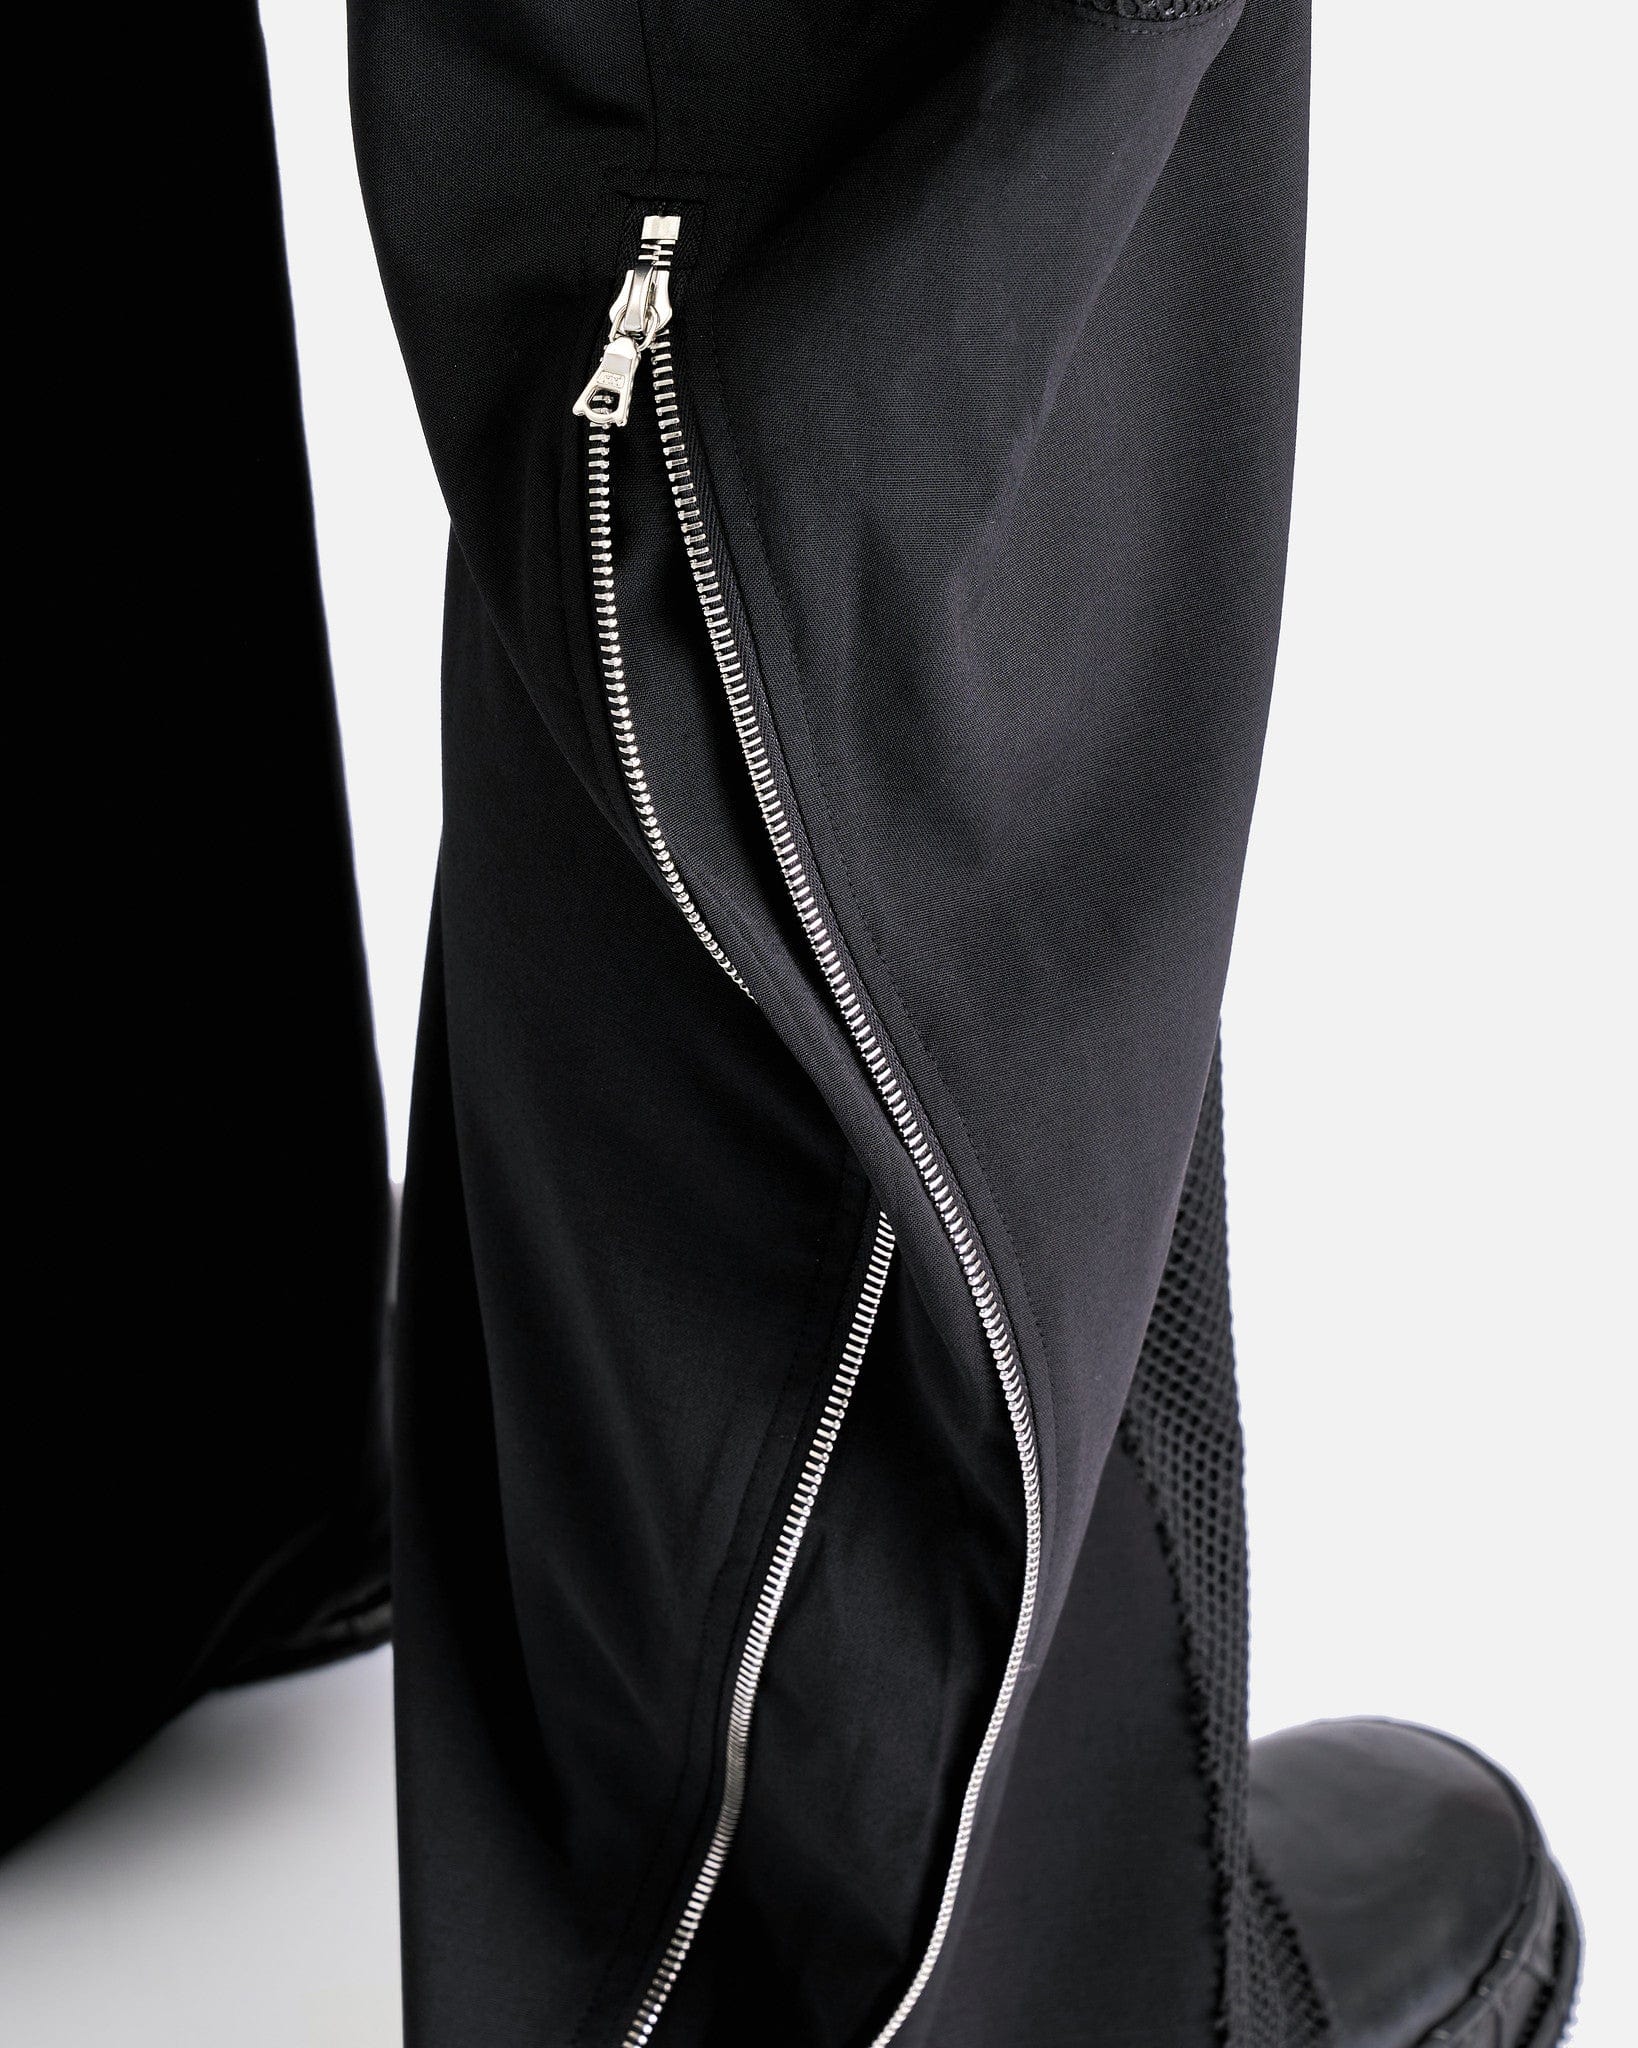 CMMAWEAR Men's Pants Articulated Back-Zip Trousers in Black